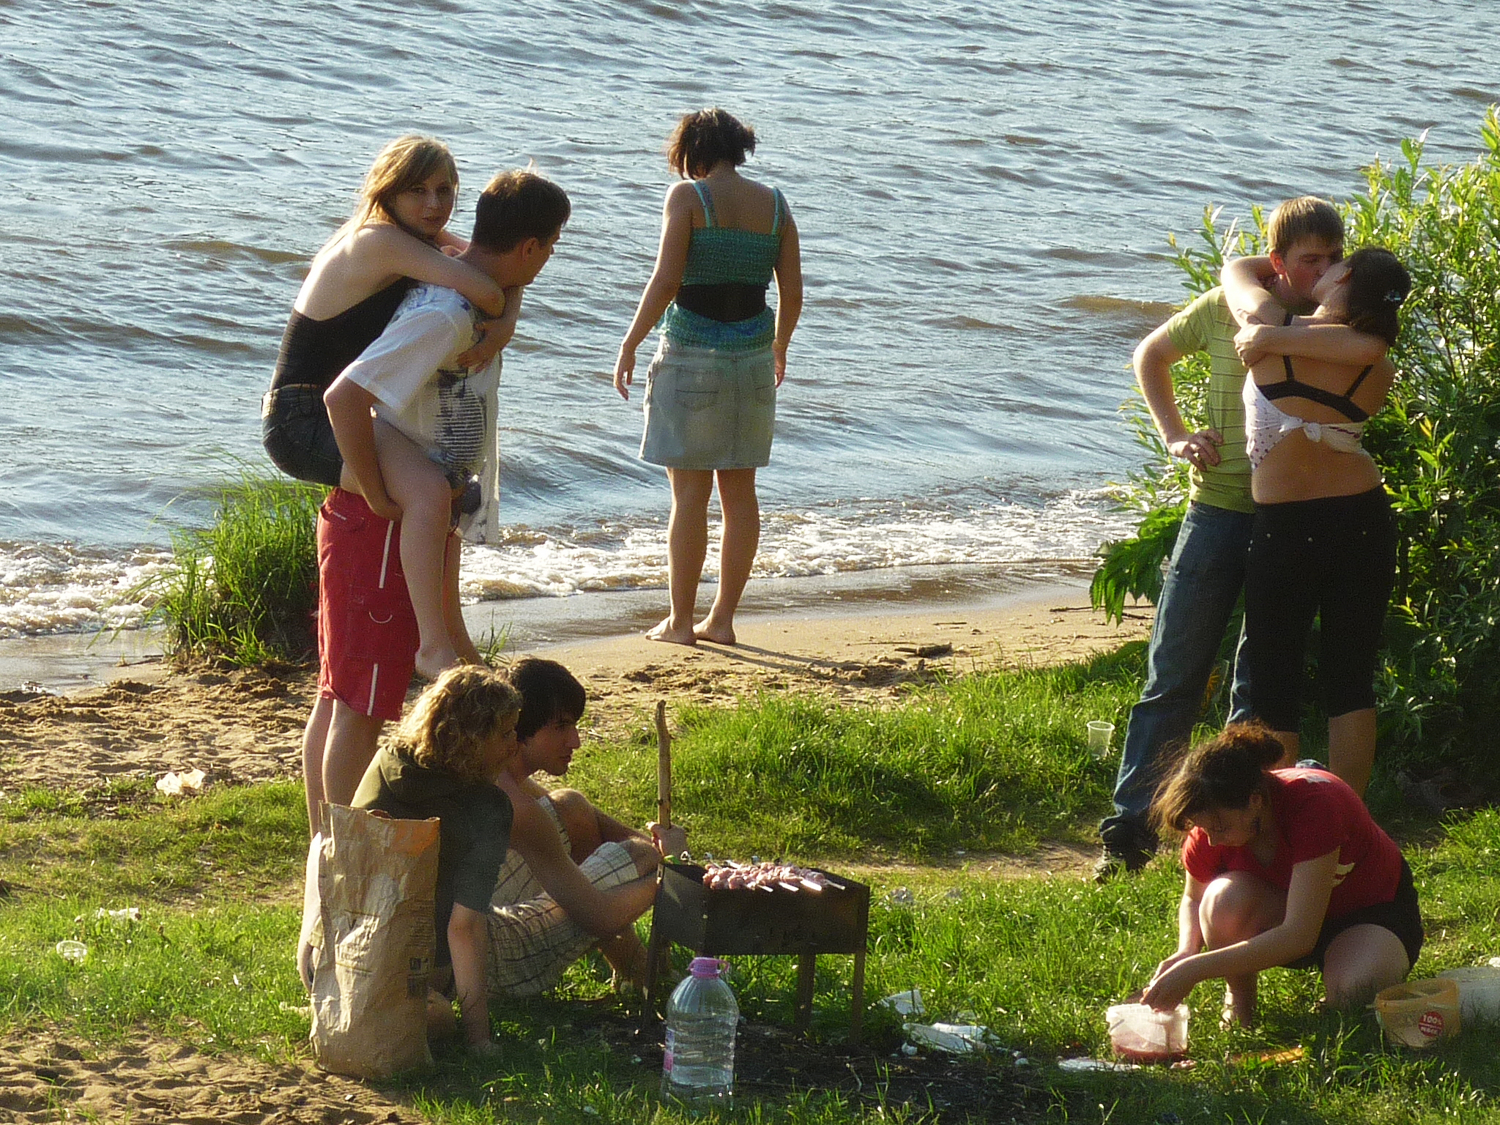 Купания на природе. Отдыхаем на речке. На речке люди пляж. Молодёжь на берегу реки. Люди отдыхают у реки.